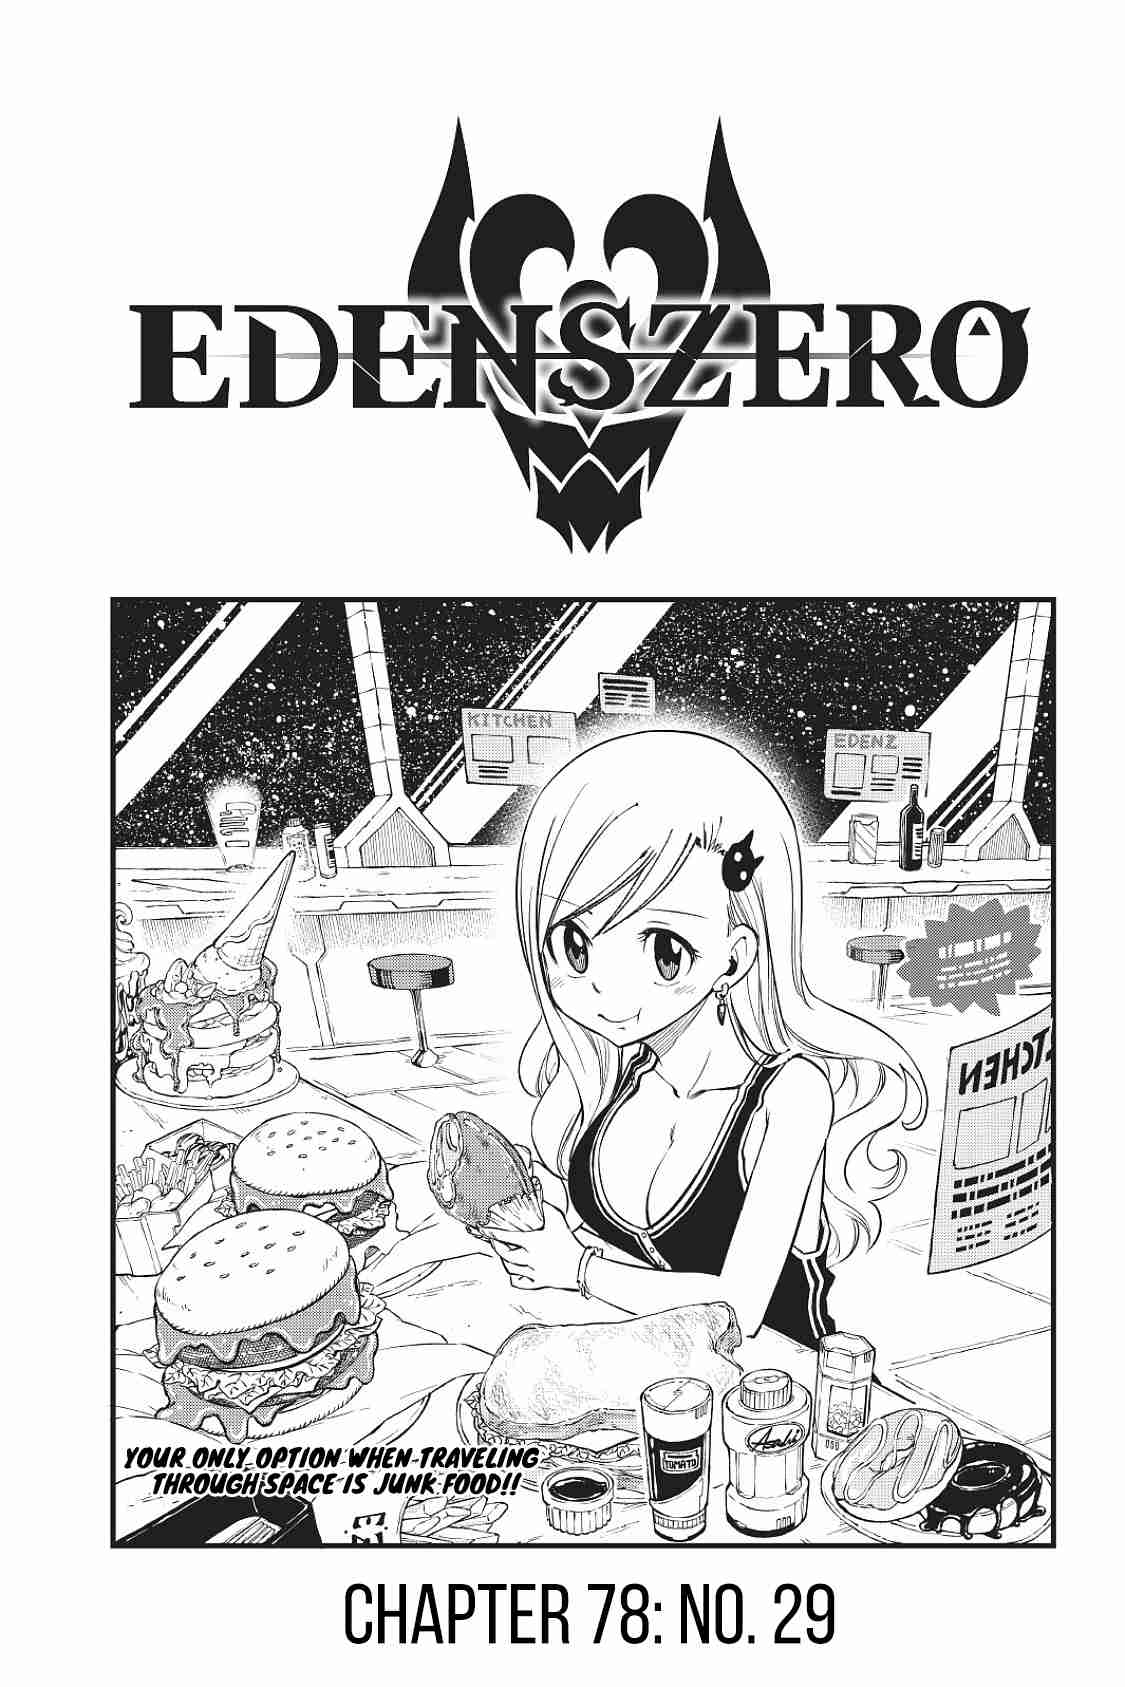 Edens Zero Ch. 78 No. 29